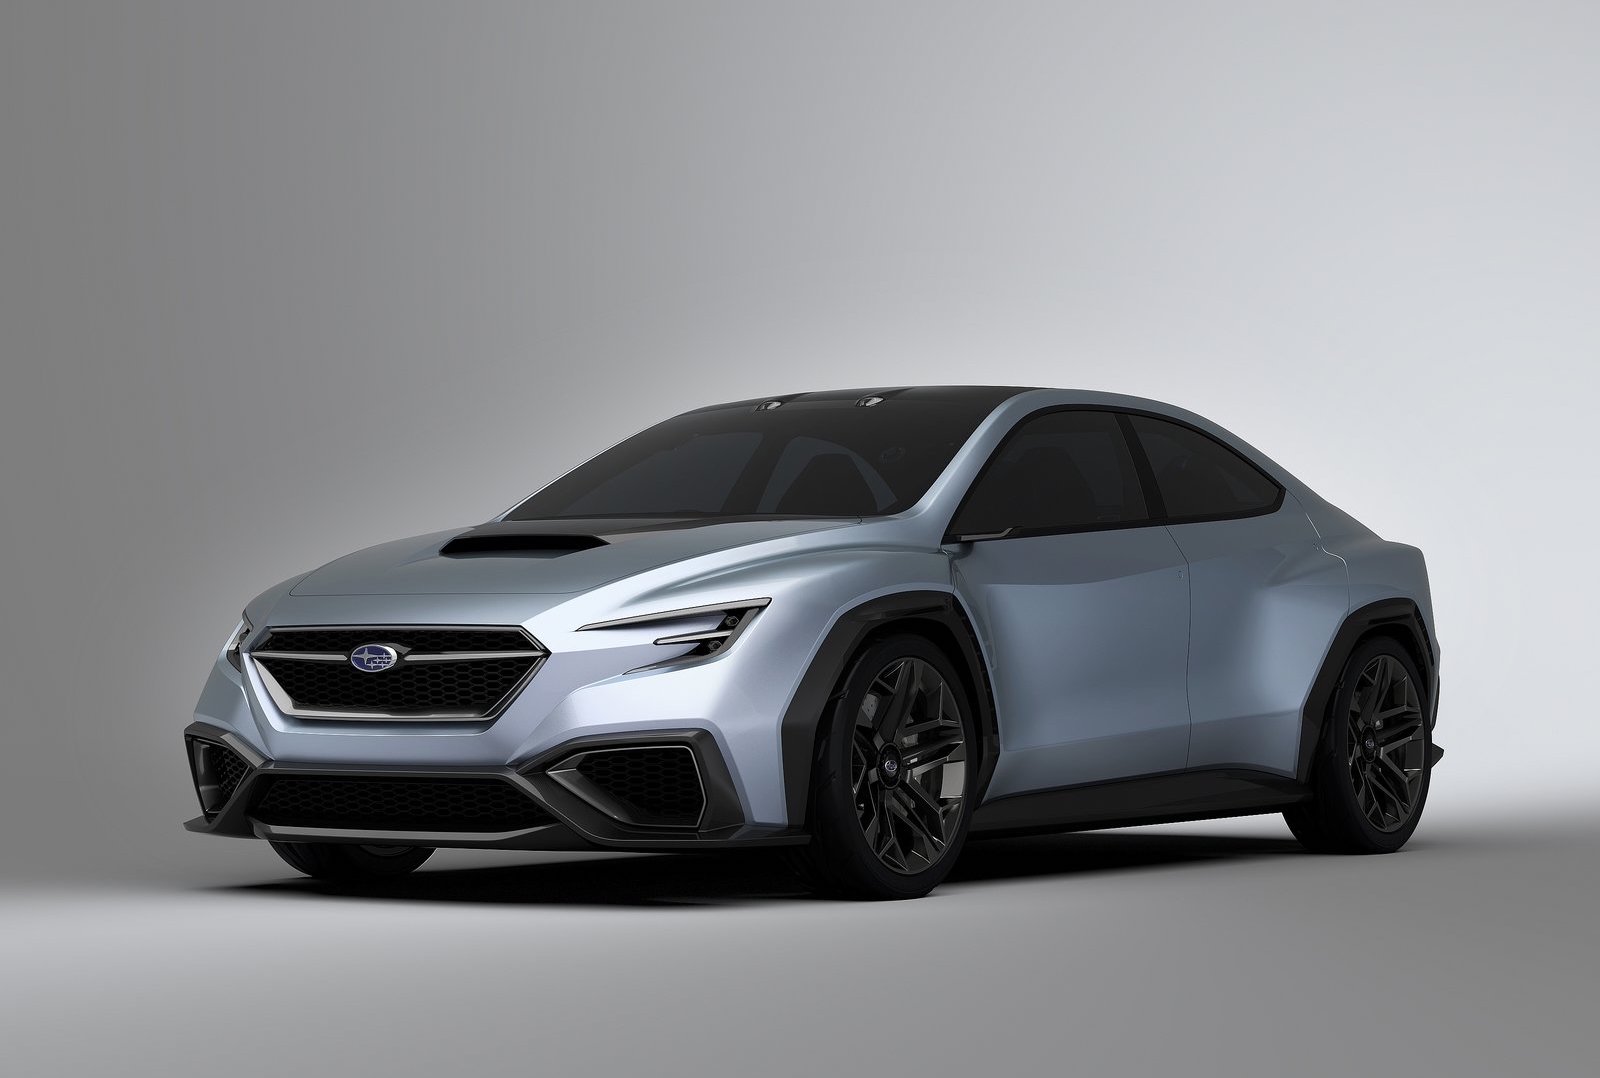 2020 Subaru Wrx Sti Likely To Feature Hybrid Powertrain Report